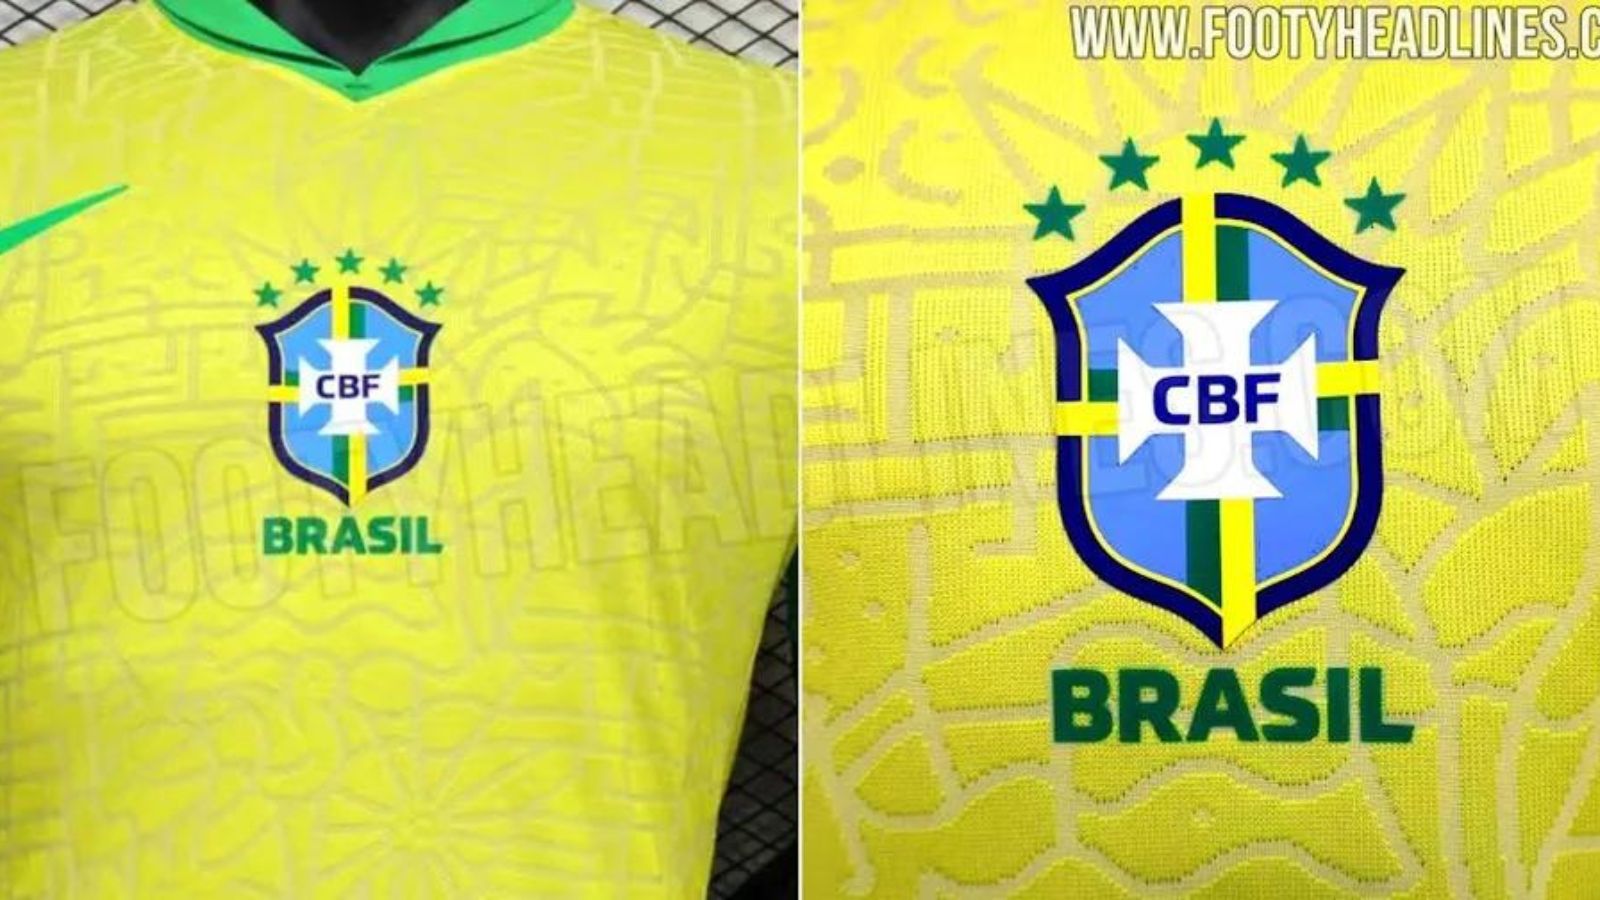 Garra brasileira: CBF divulga linha de uniformes oficiais para a